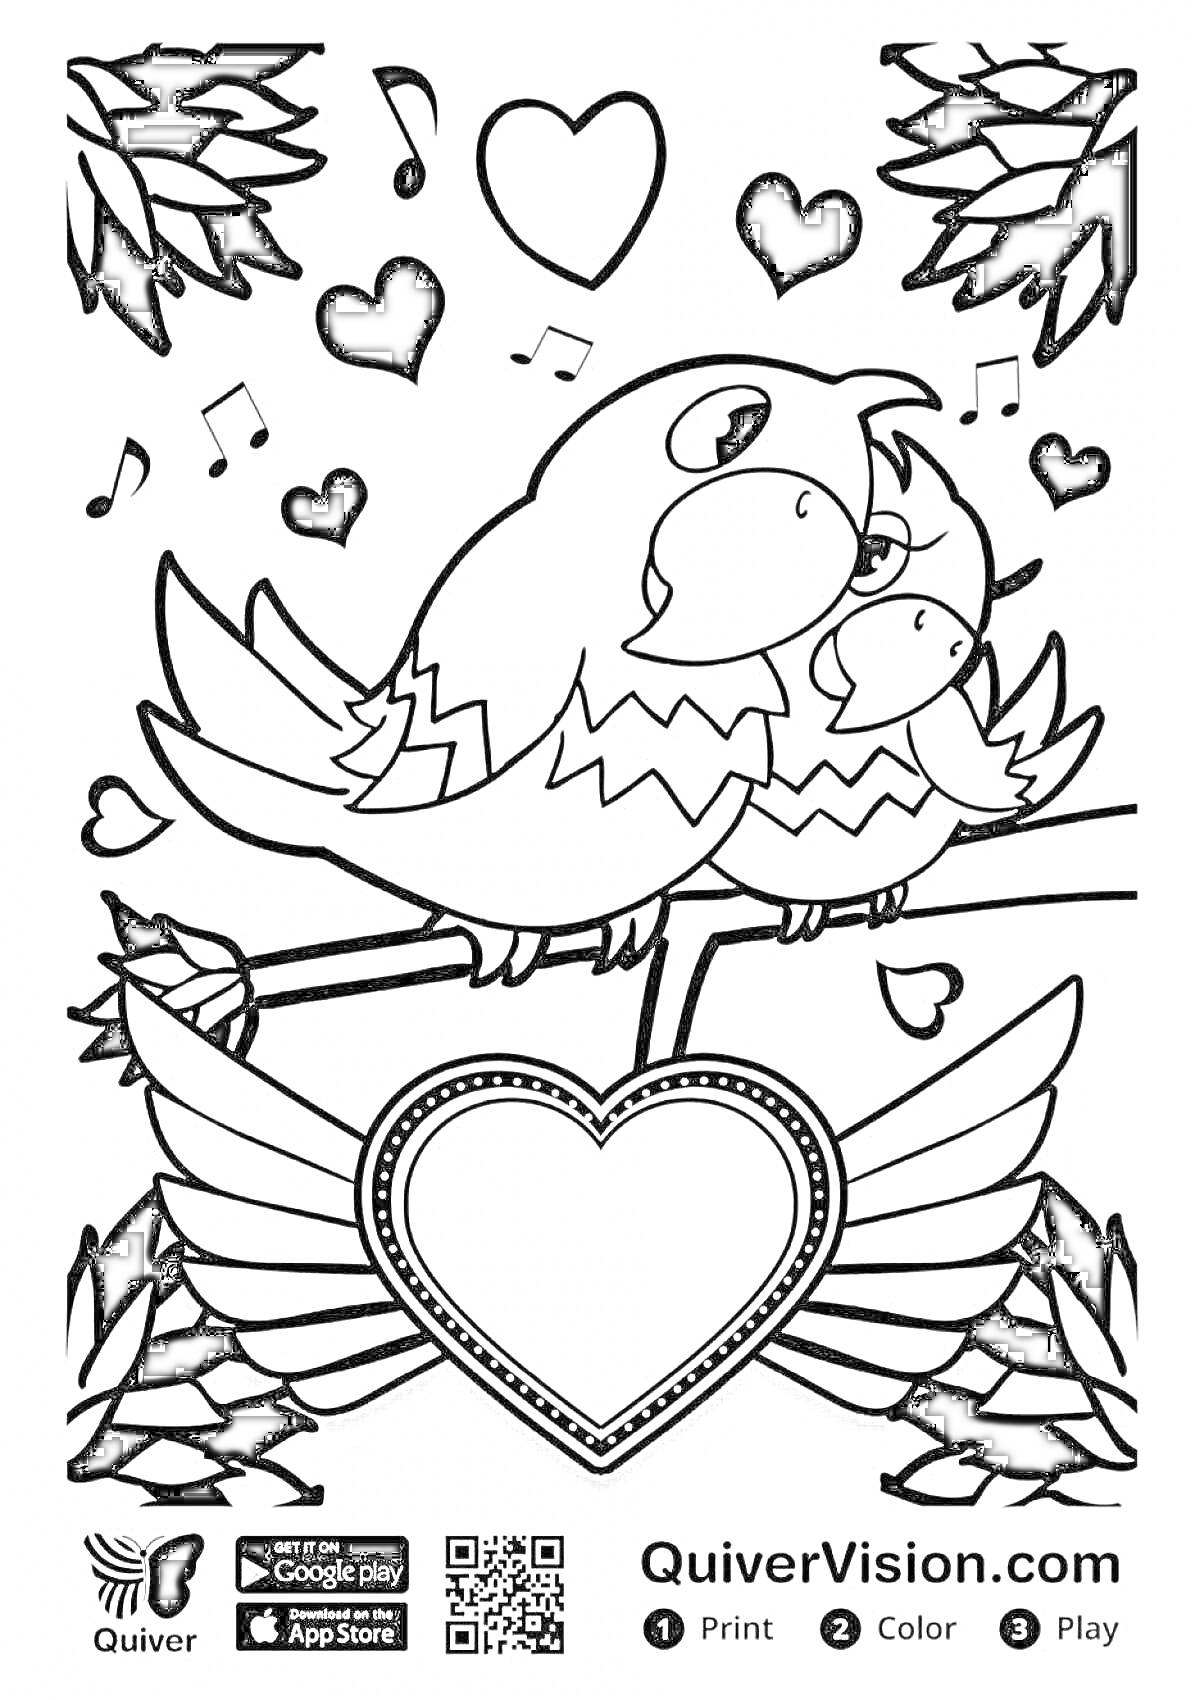 Раскраска Попугаи, сердечки, музыкальные ноты и крылья на ветке.